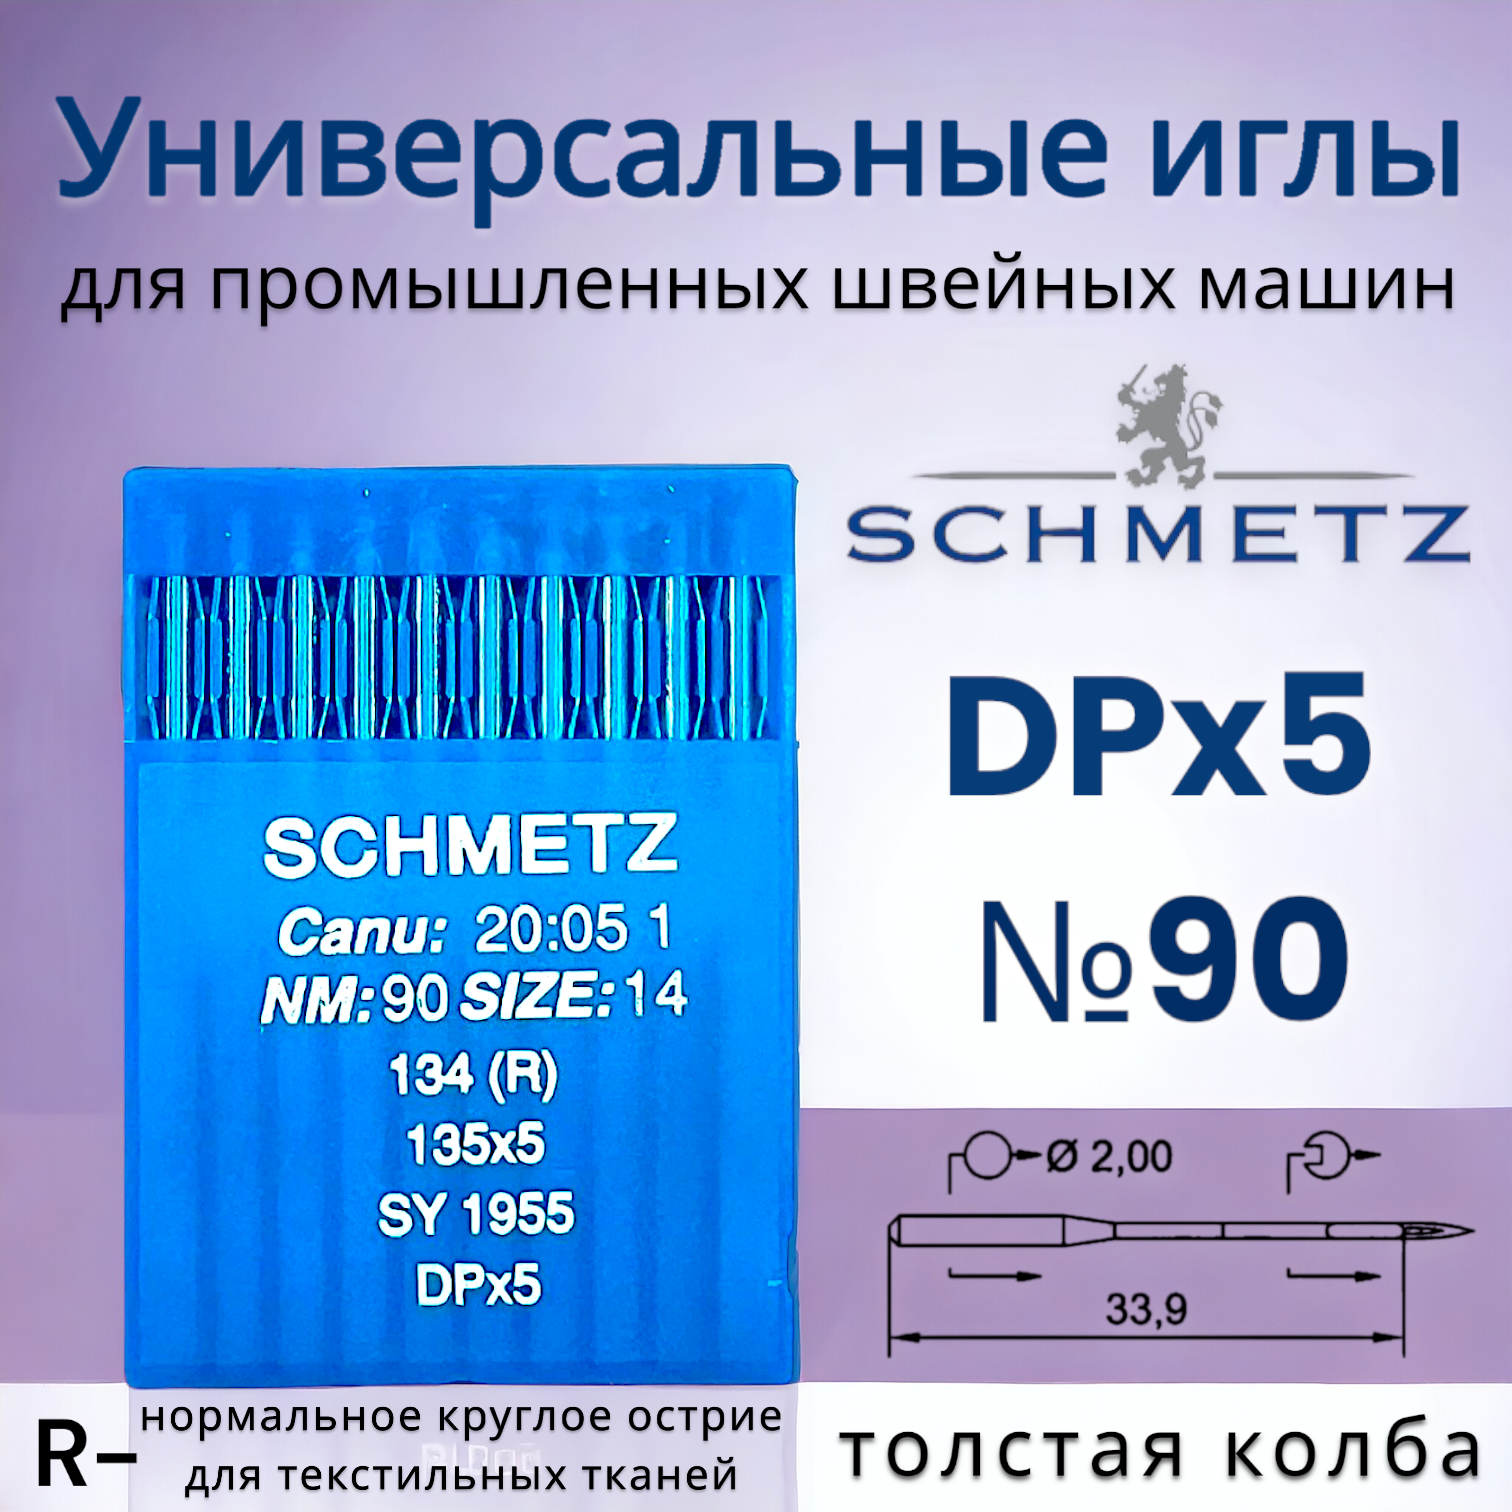 Иглы DPx5 (134) R №90/ Schmetz для промышленных швейных машин/ толстая колба